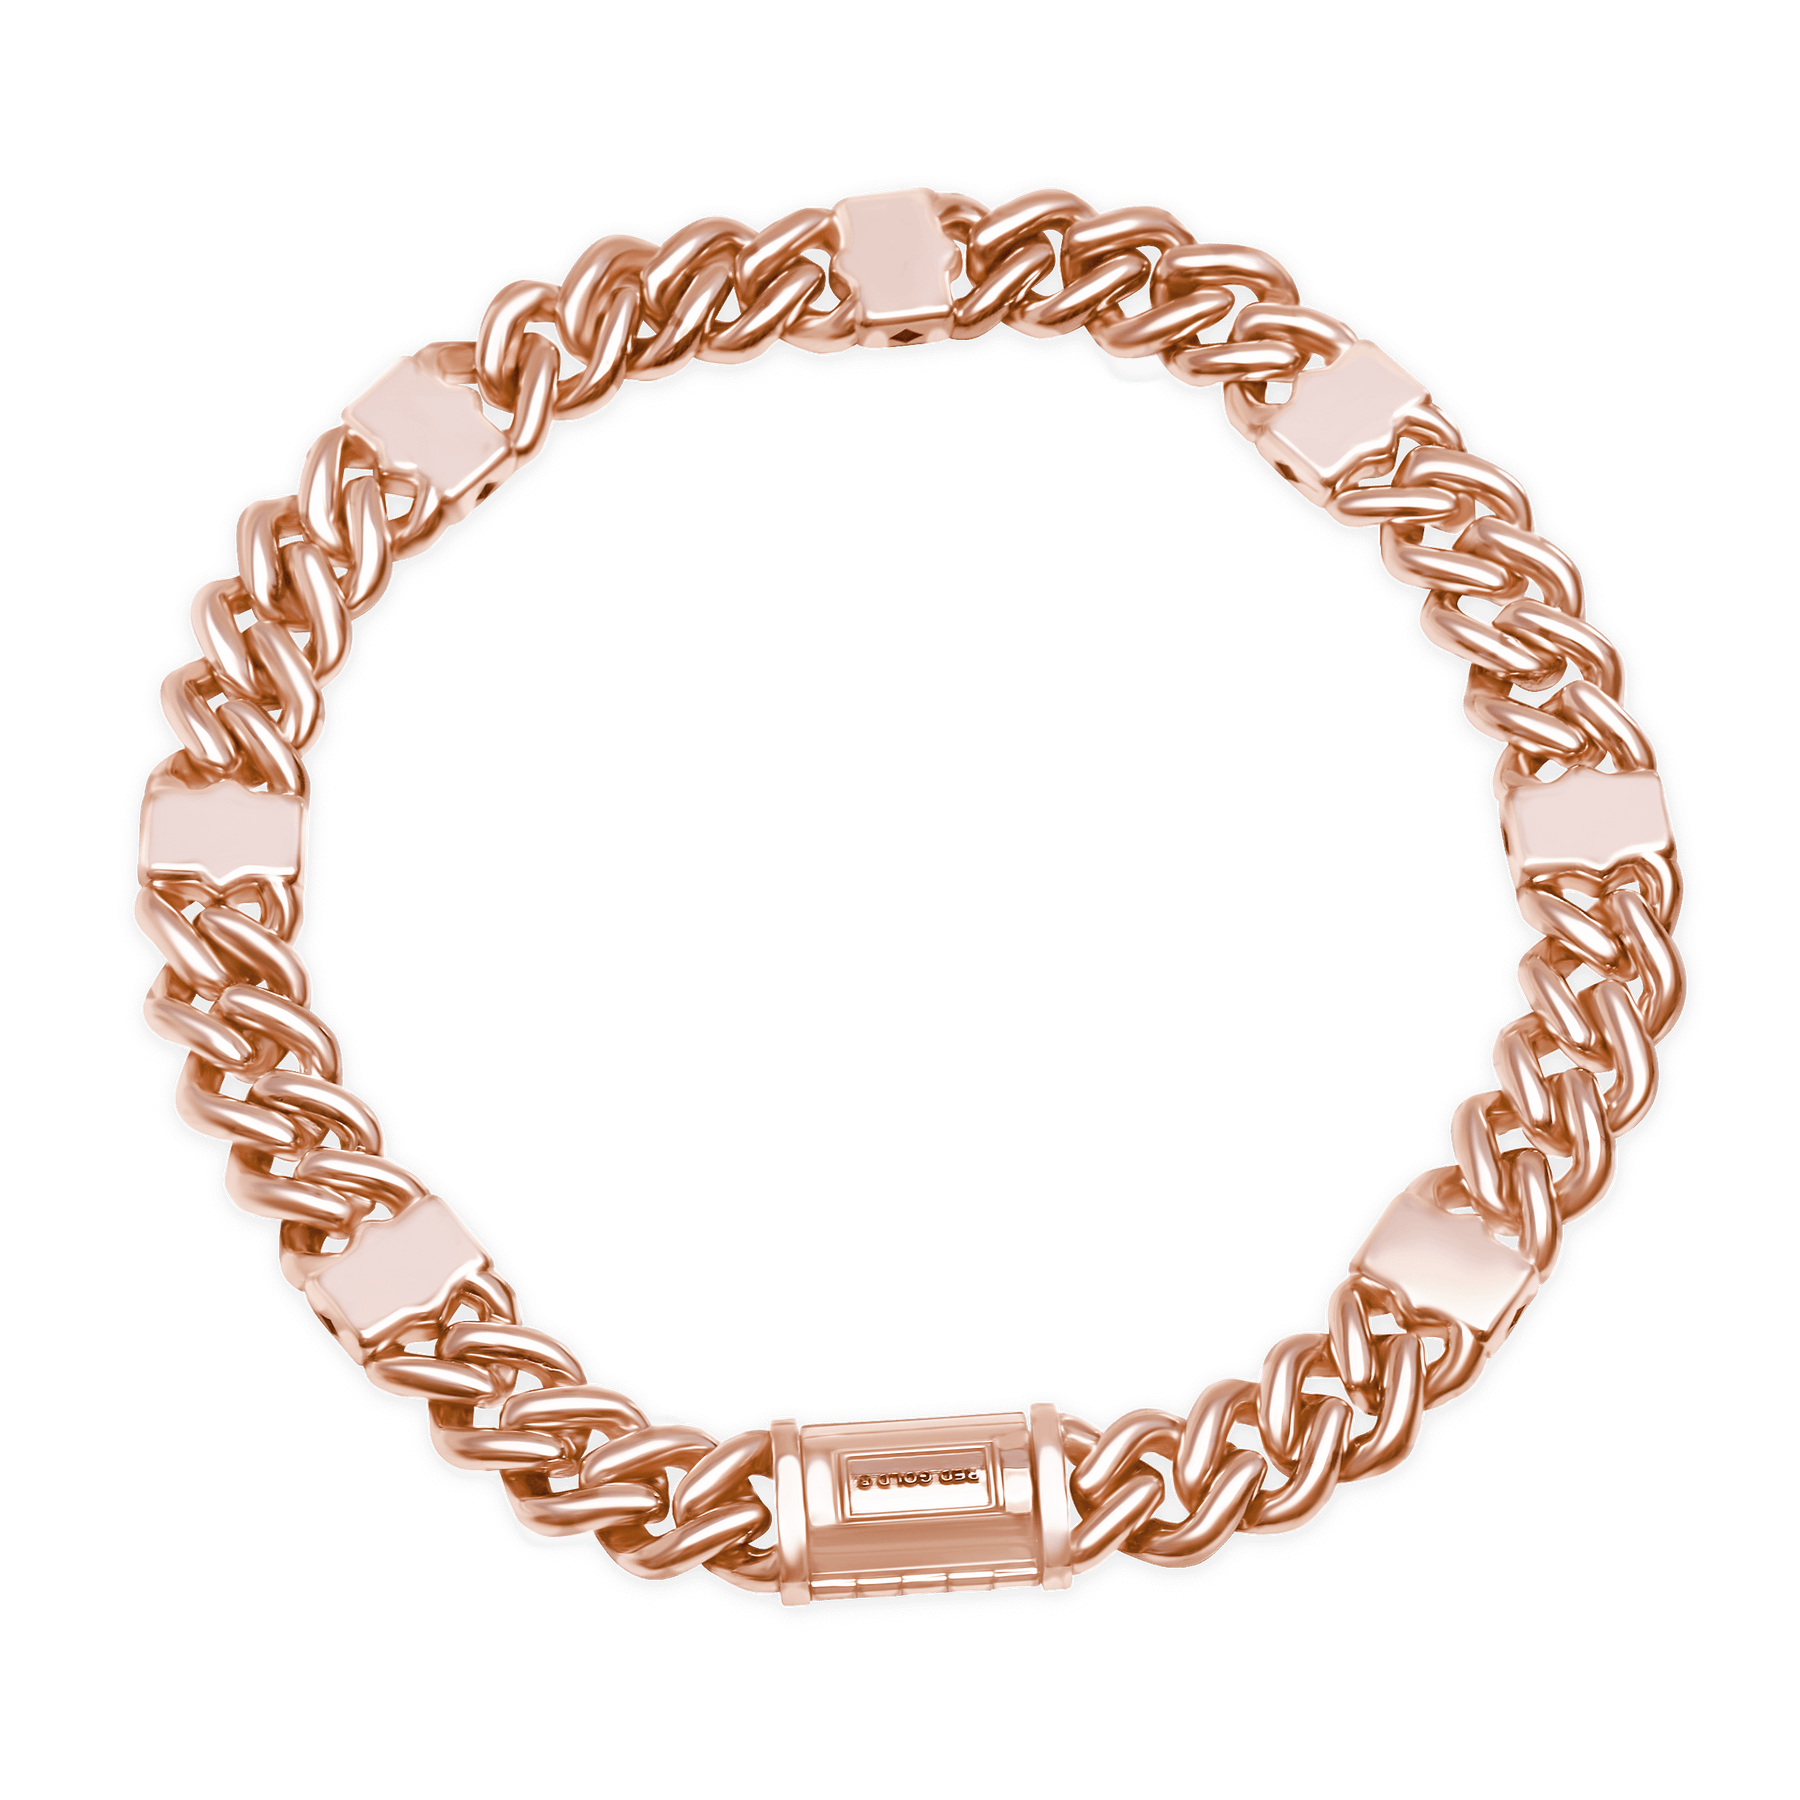 Bracelet-18 Karat Solid Gold For Men And Women